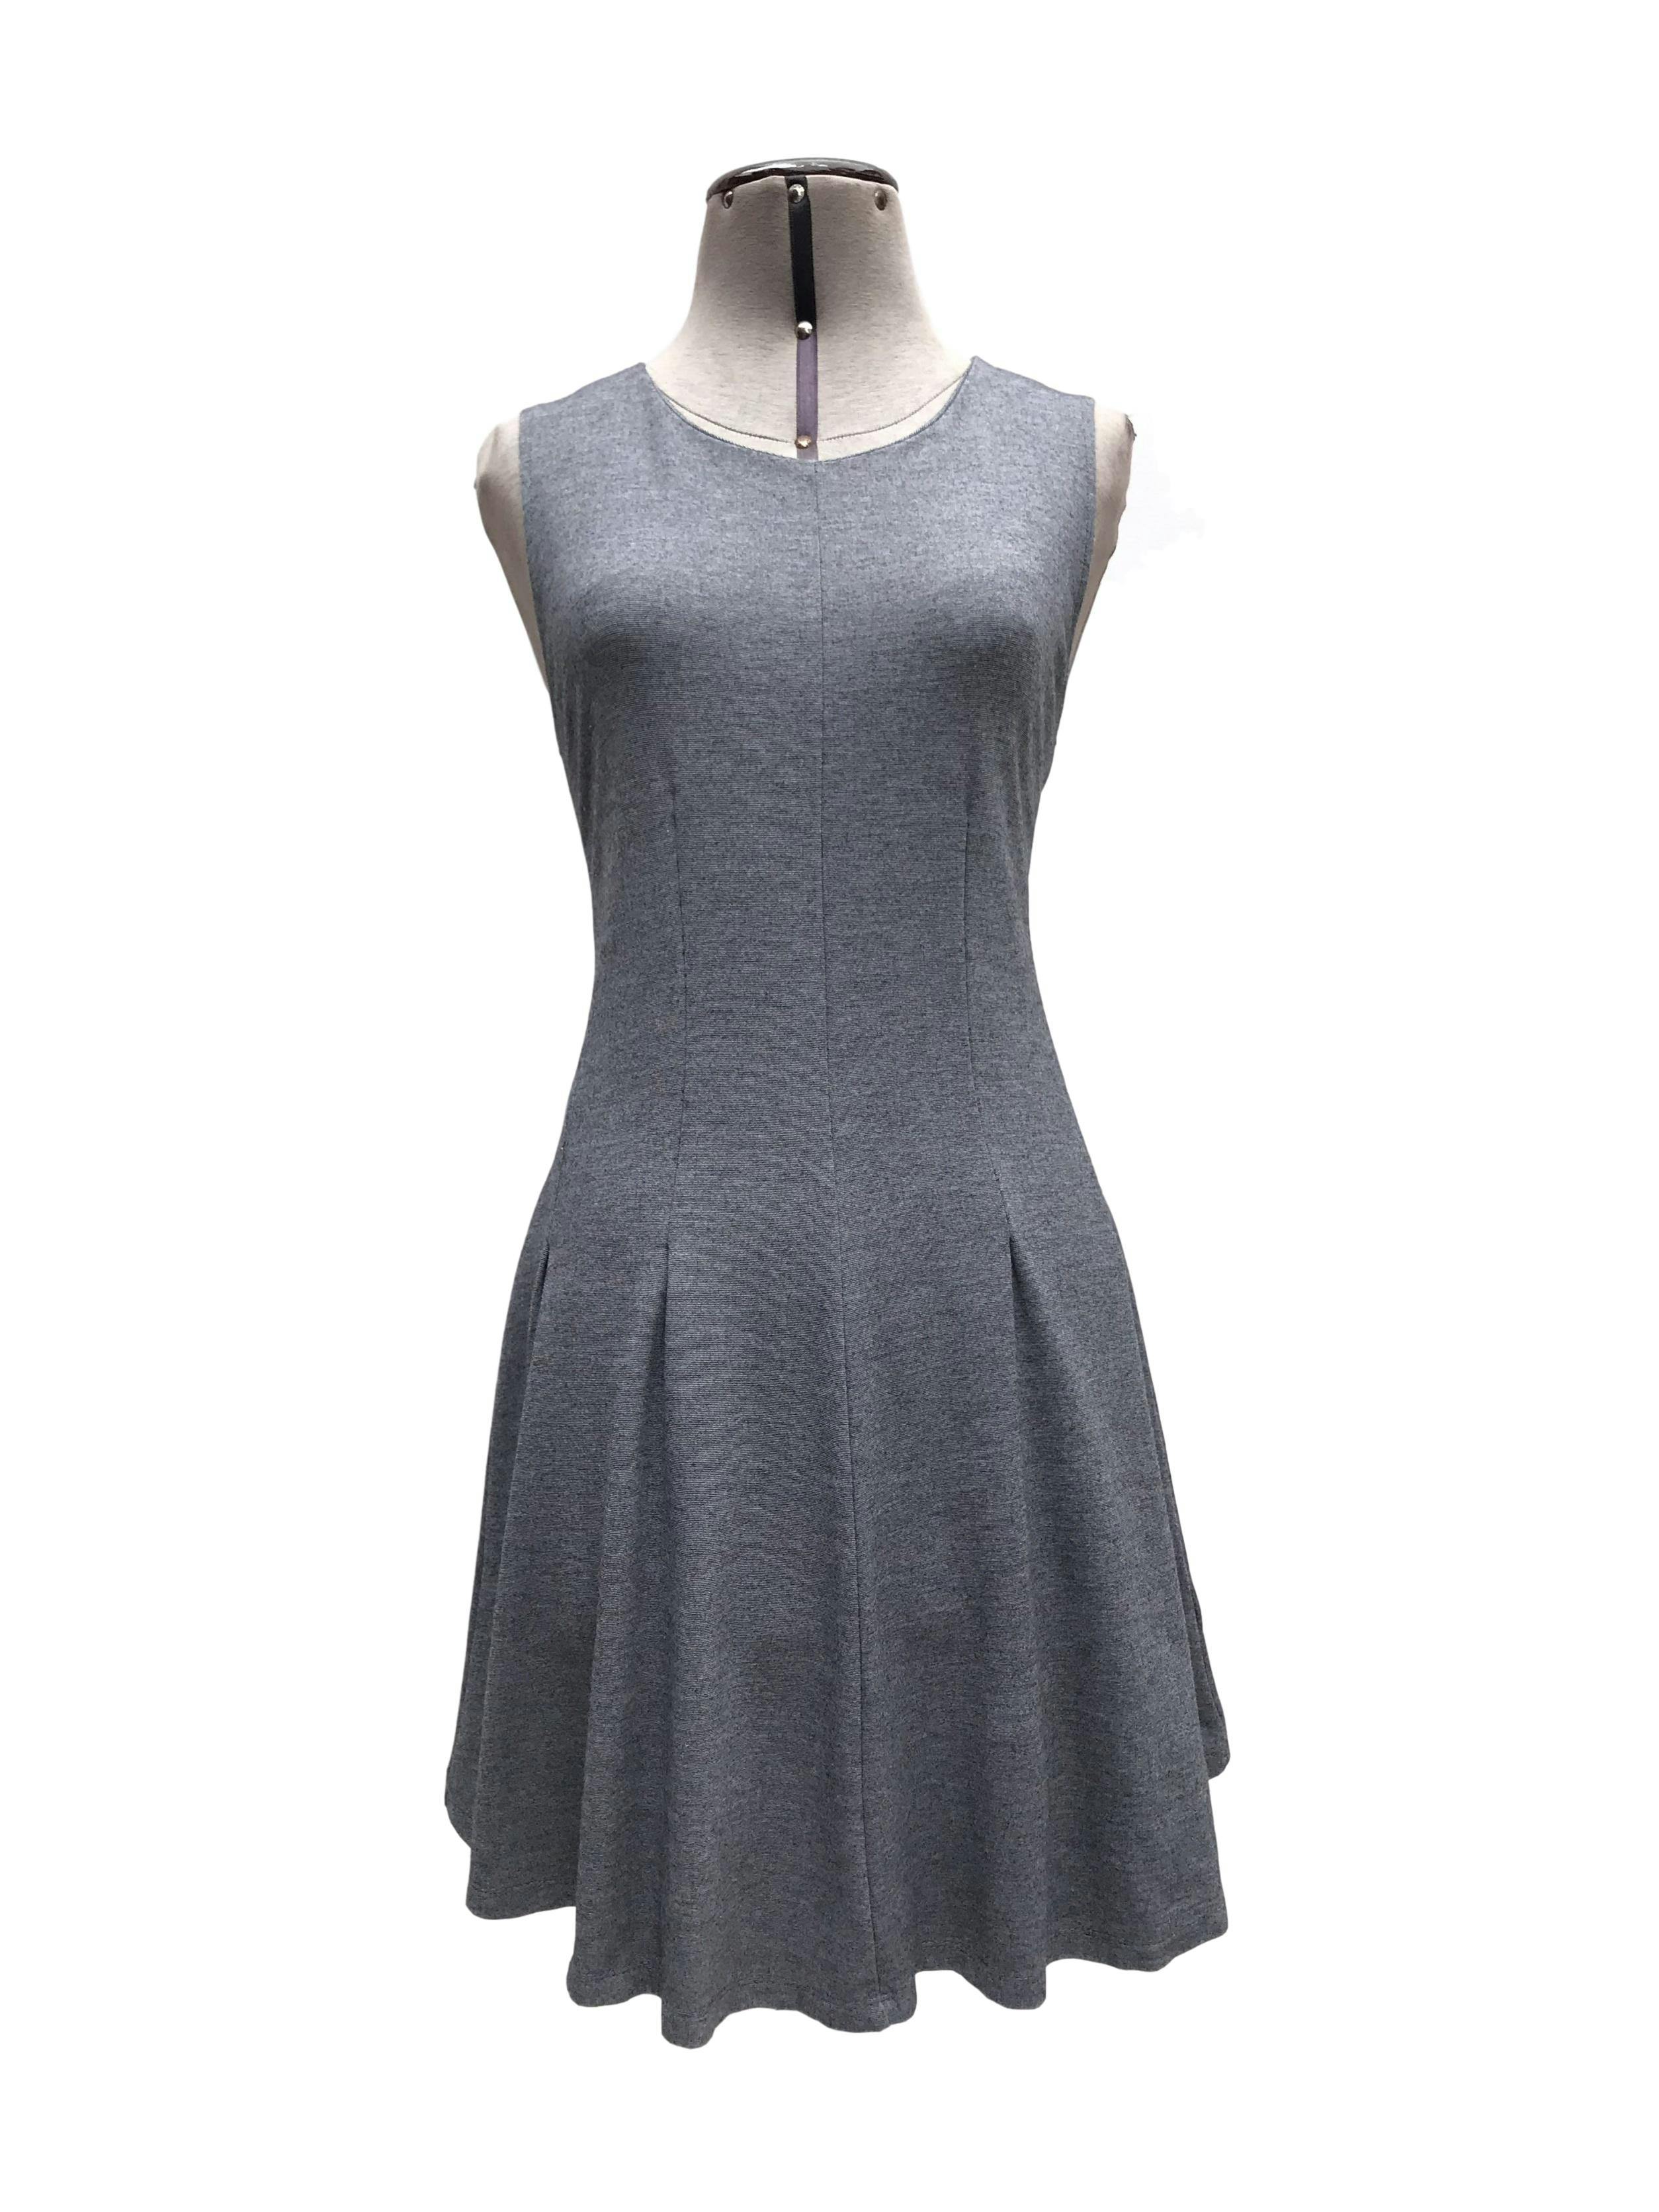 Vestido Malabar plomo, cortes al centro y falda en A, tela tipo algodón stretch. Largo 80cm Precio original S/ 120